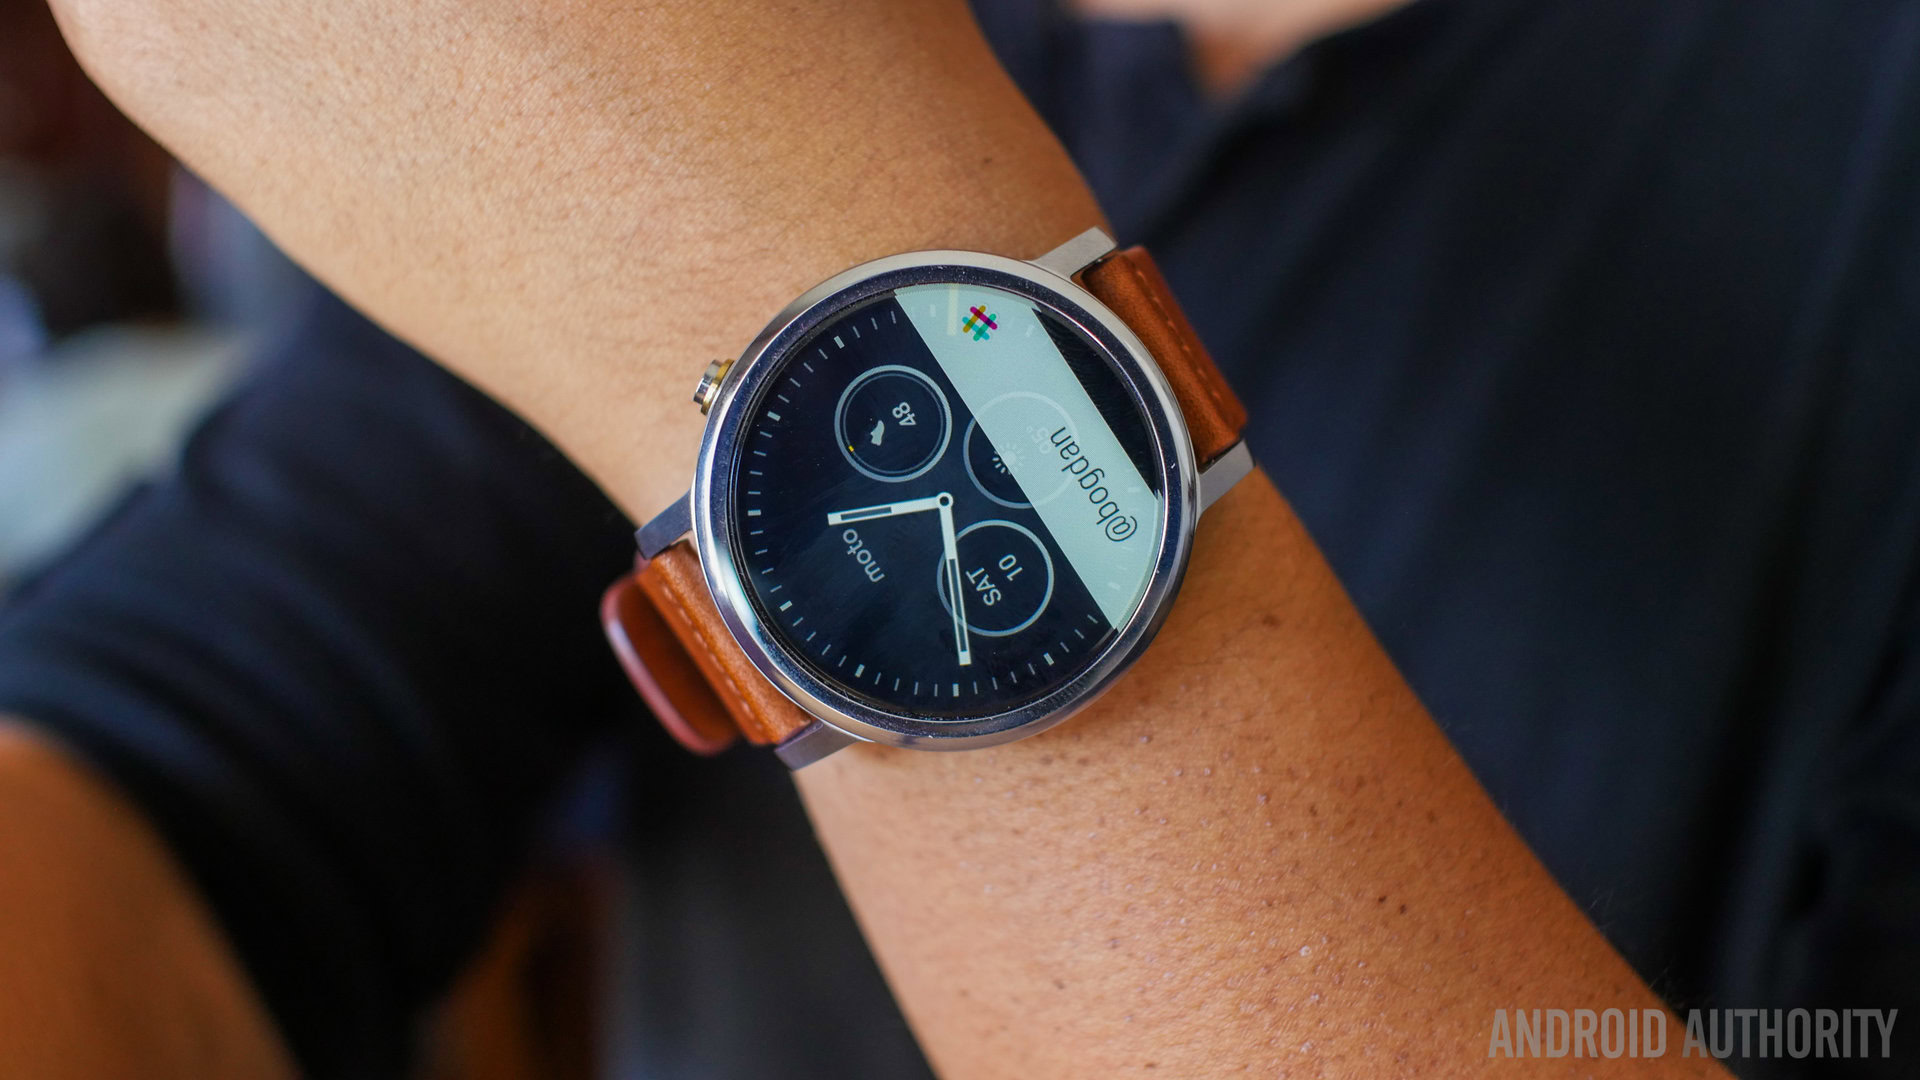 Chegou a segunda geração do smartwatch Moto 360